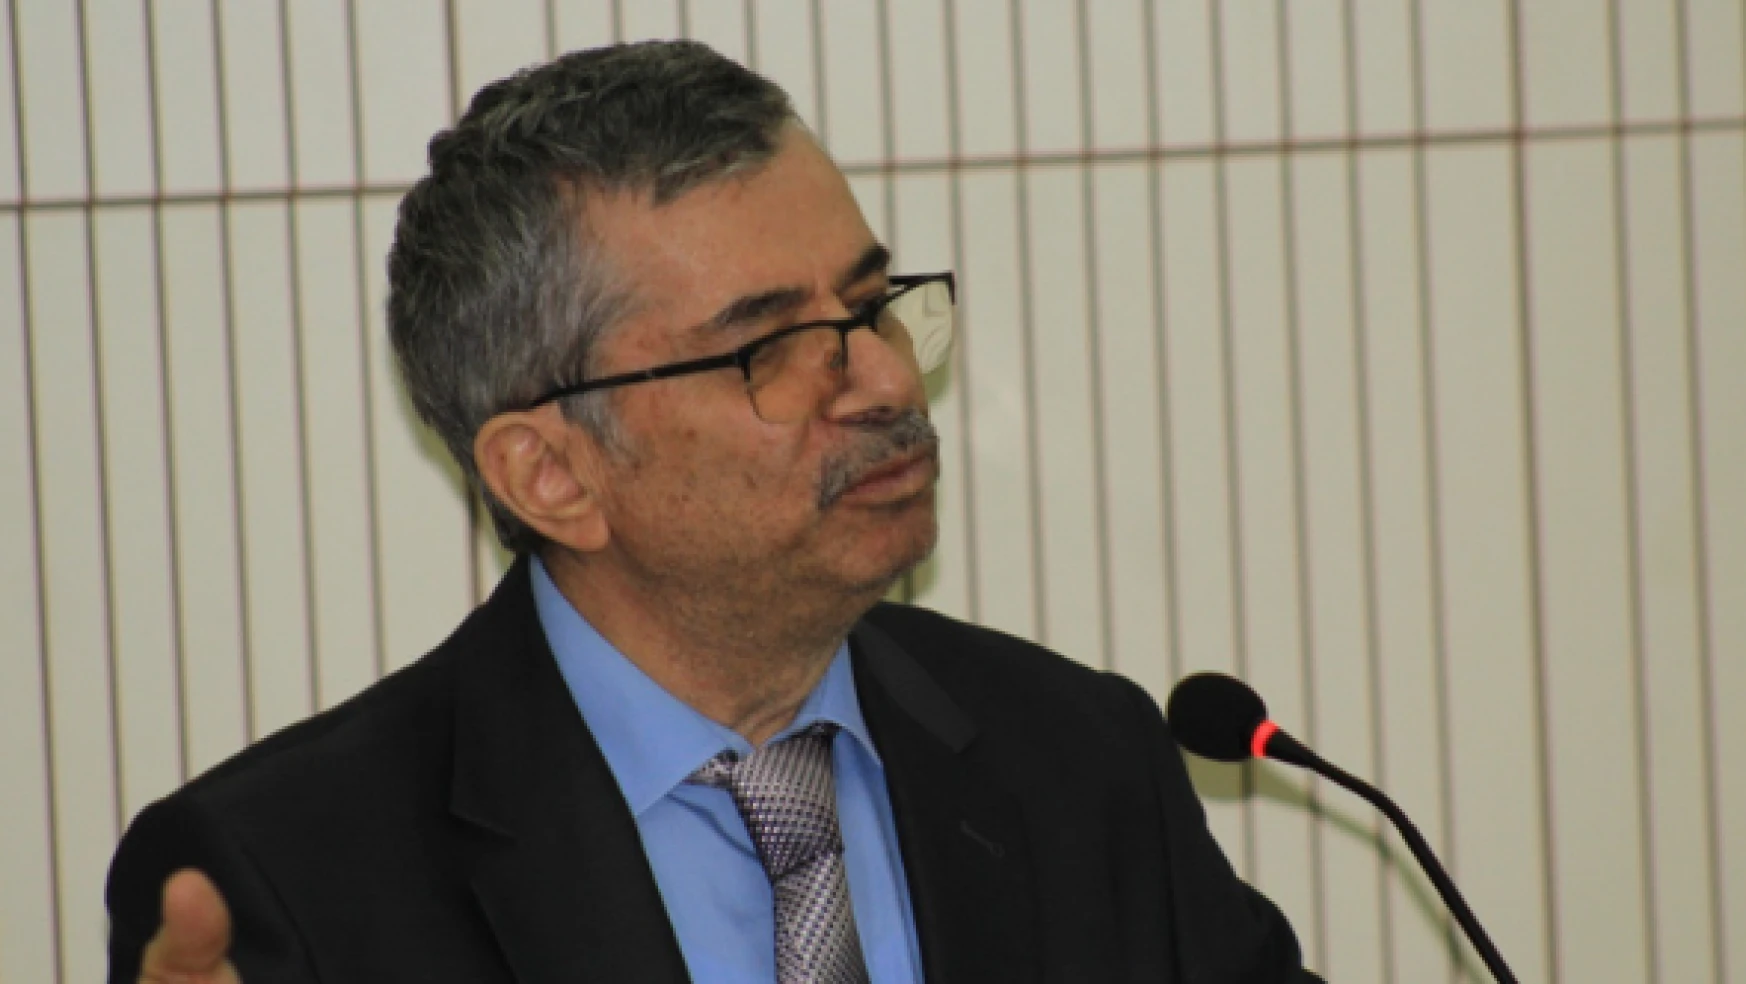 Arkeolojiye adanmış yarım asır Mehmet Karaosmanoğlu emekli oldu